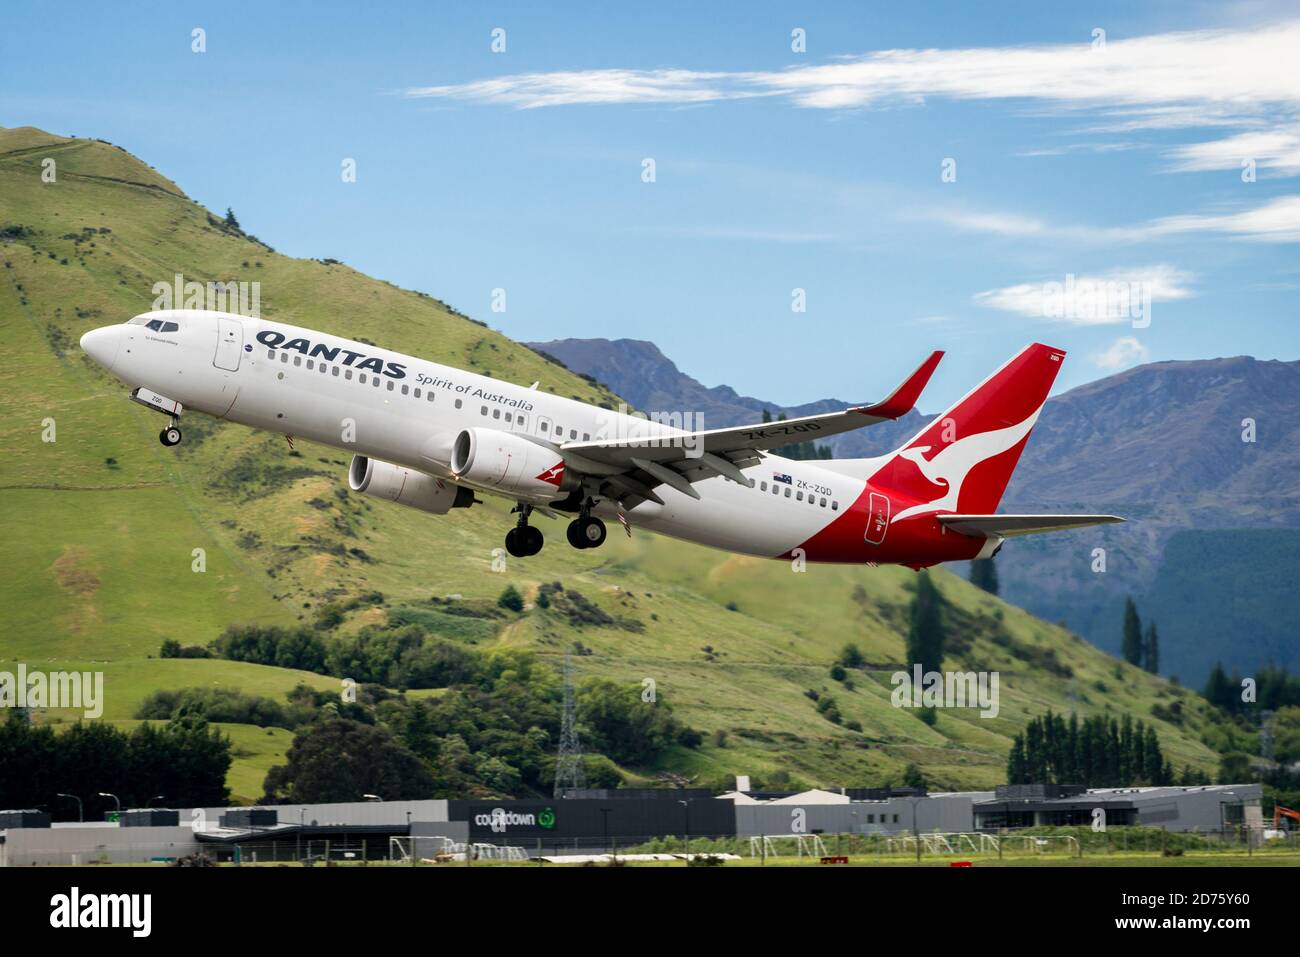 Queenstown, NOUVELLE-ZÉLANDE - DEC 9, 2016: L'avion de Qantas Airways prend son décollage de la piste de l'aéroport de Queenstown, Queenstown, Île du Sud de la Nouvelle-Zélande Banque D'Images